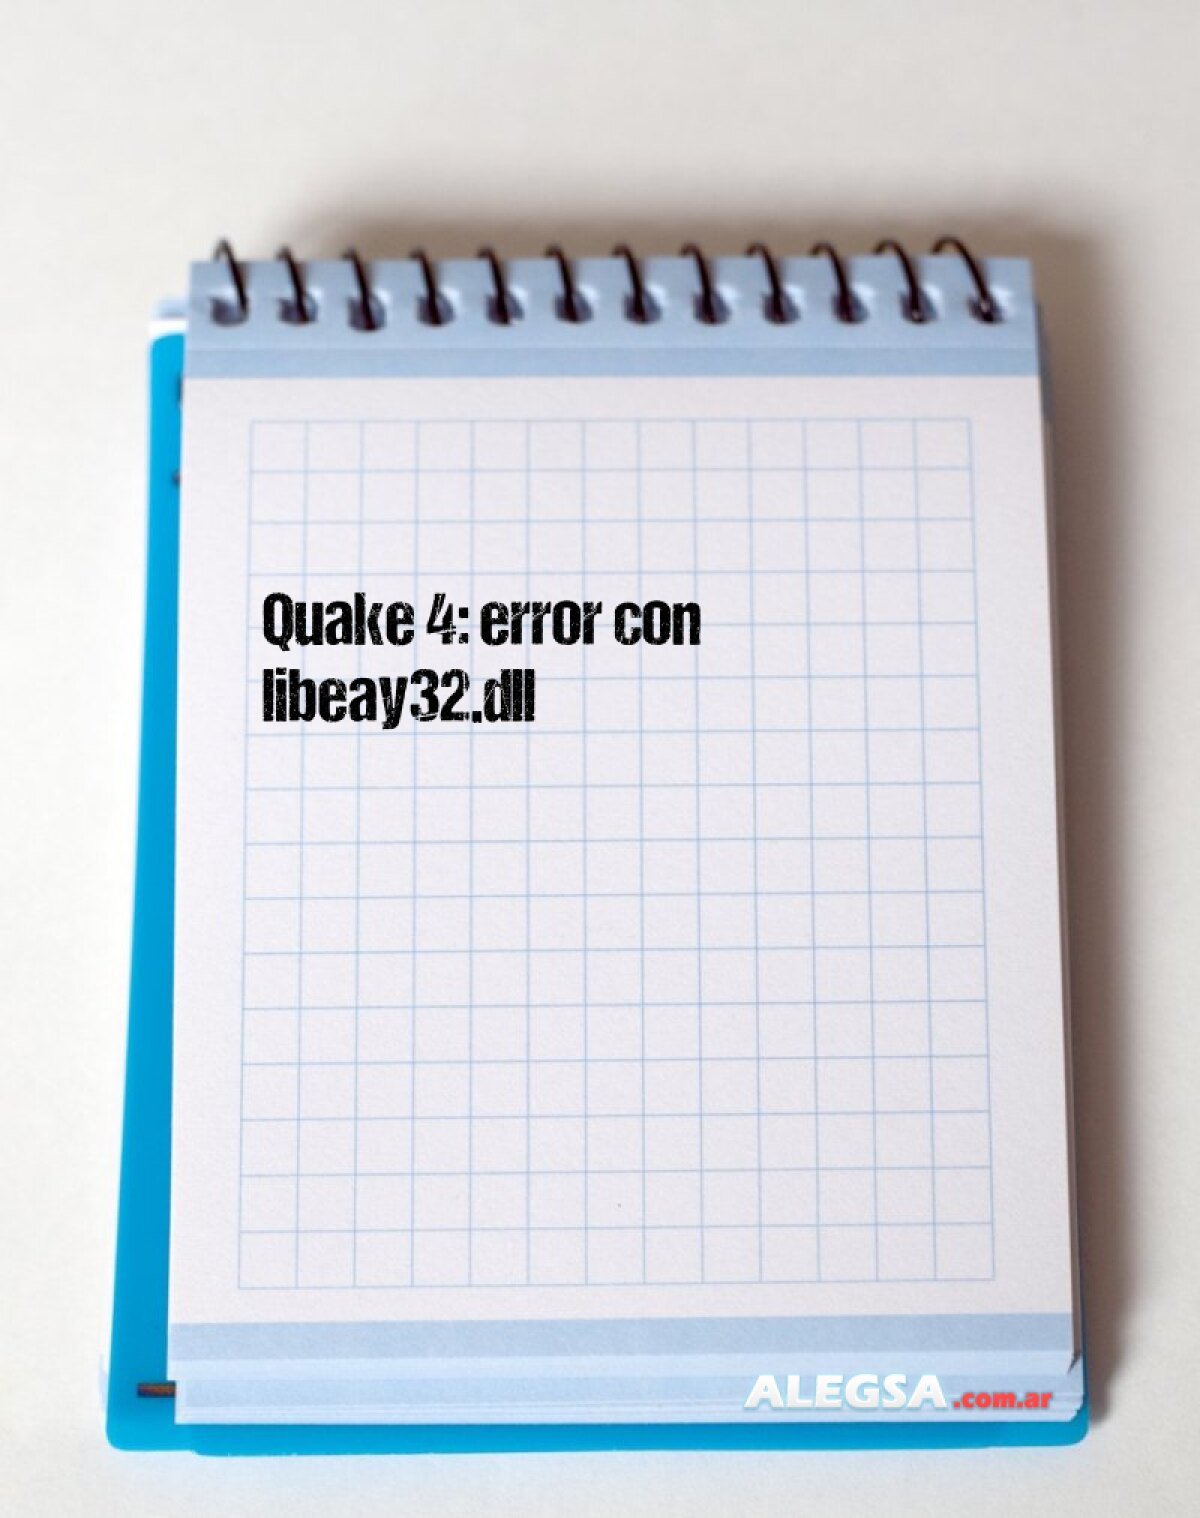 Quake 4: error con libeay32.dll